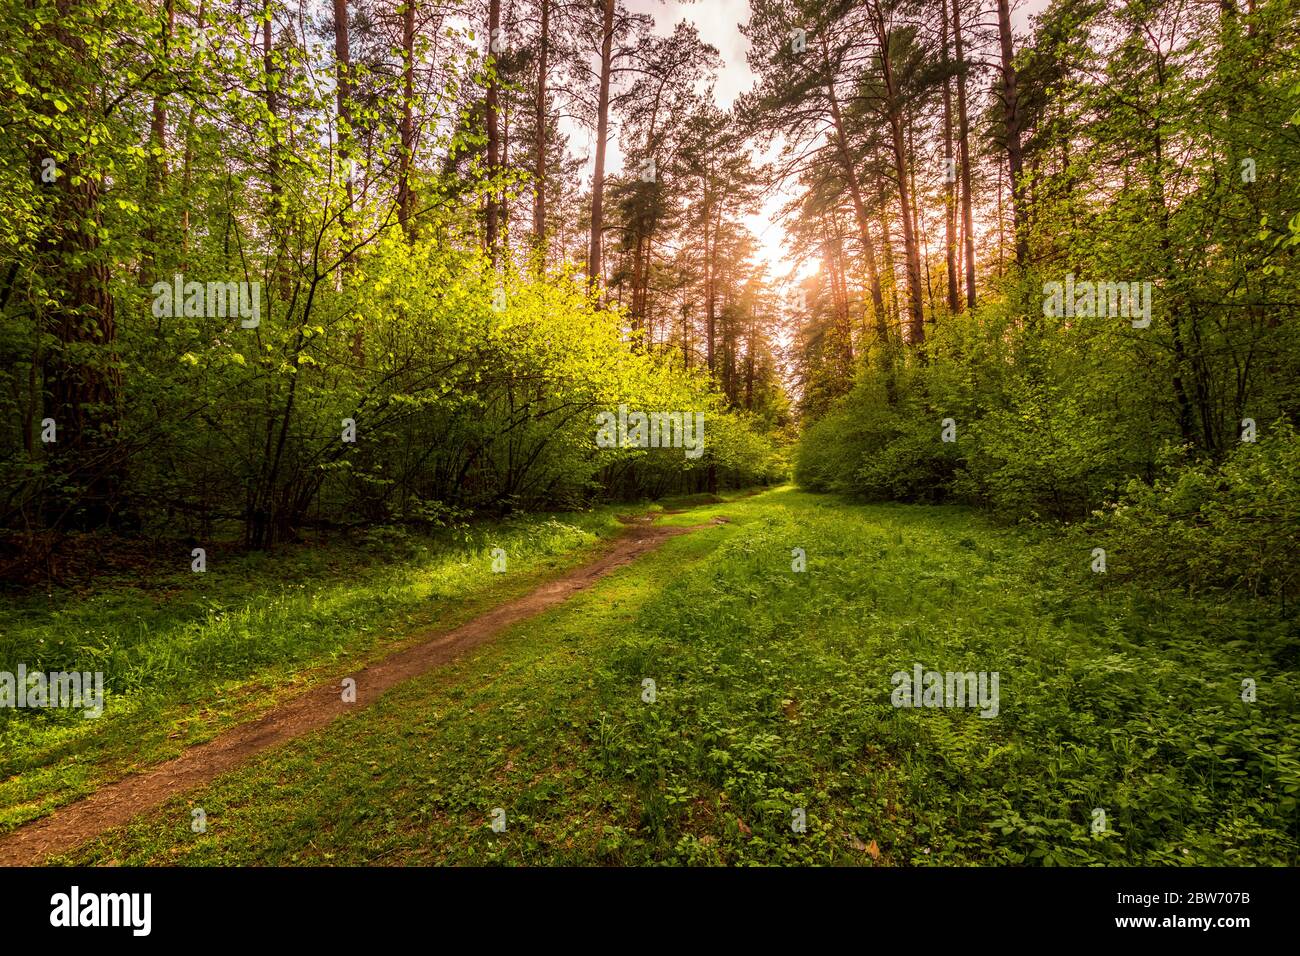 Forêt de pins de printemps par temps ensoleillé avec des buissons avec de jeunes feuilles vertes qui brillent dans les rayons du soleil et un chemin qui va dans la distance. Coucher de soleil Banque D'Images